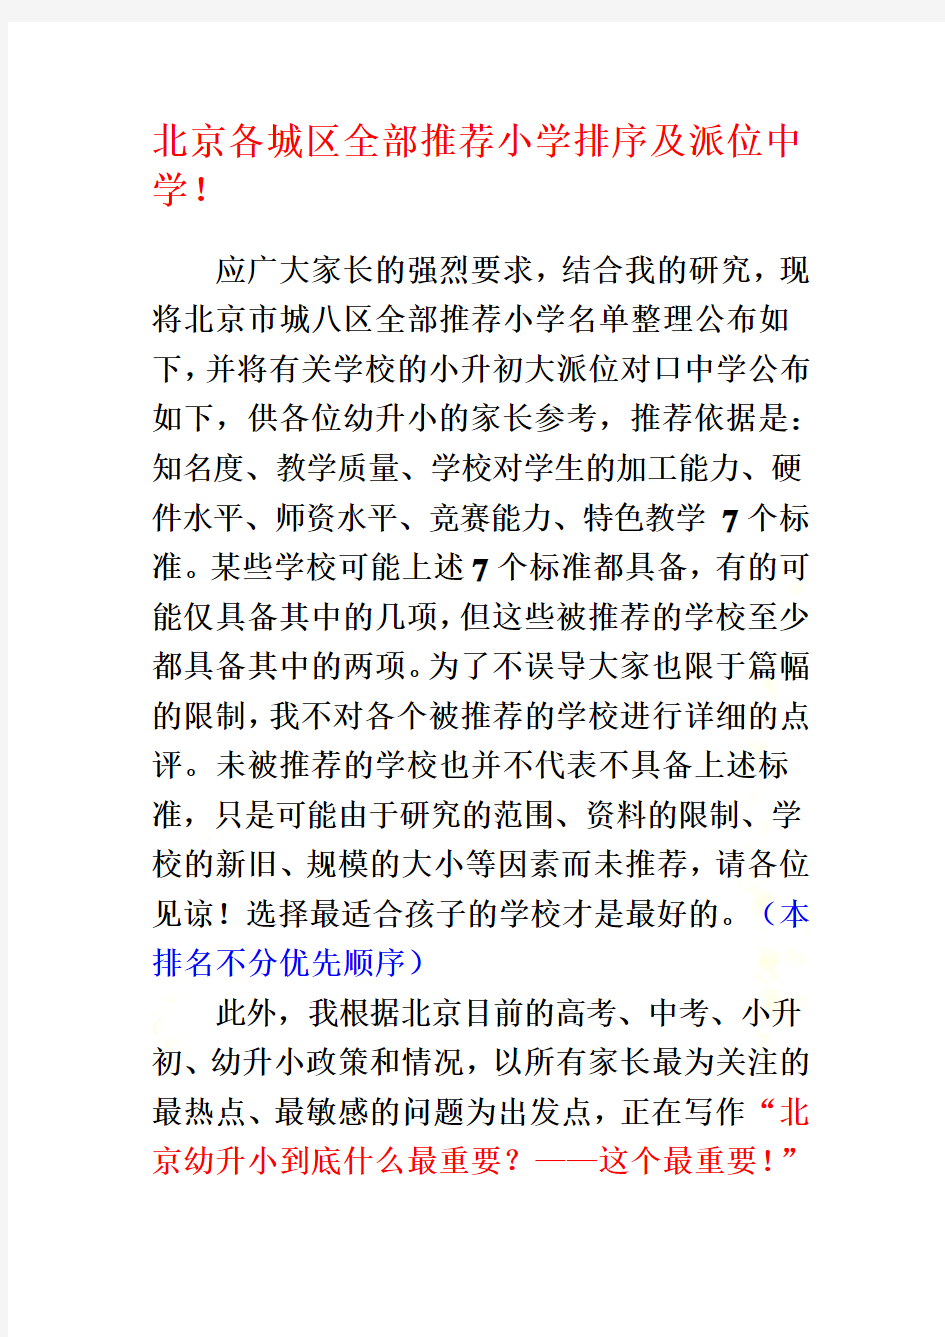 北京各城区全部推荐小学排序及派位中学